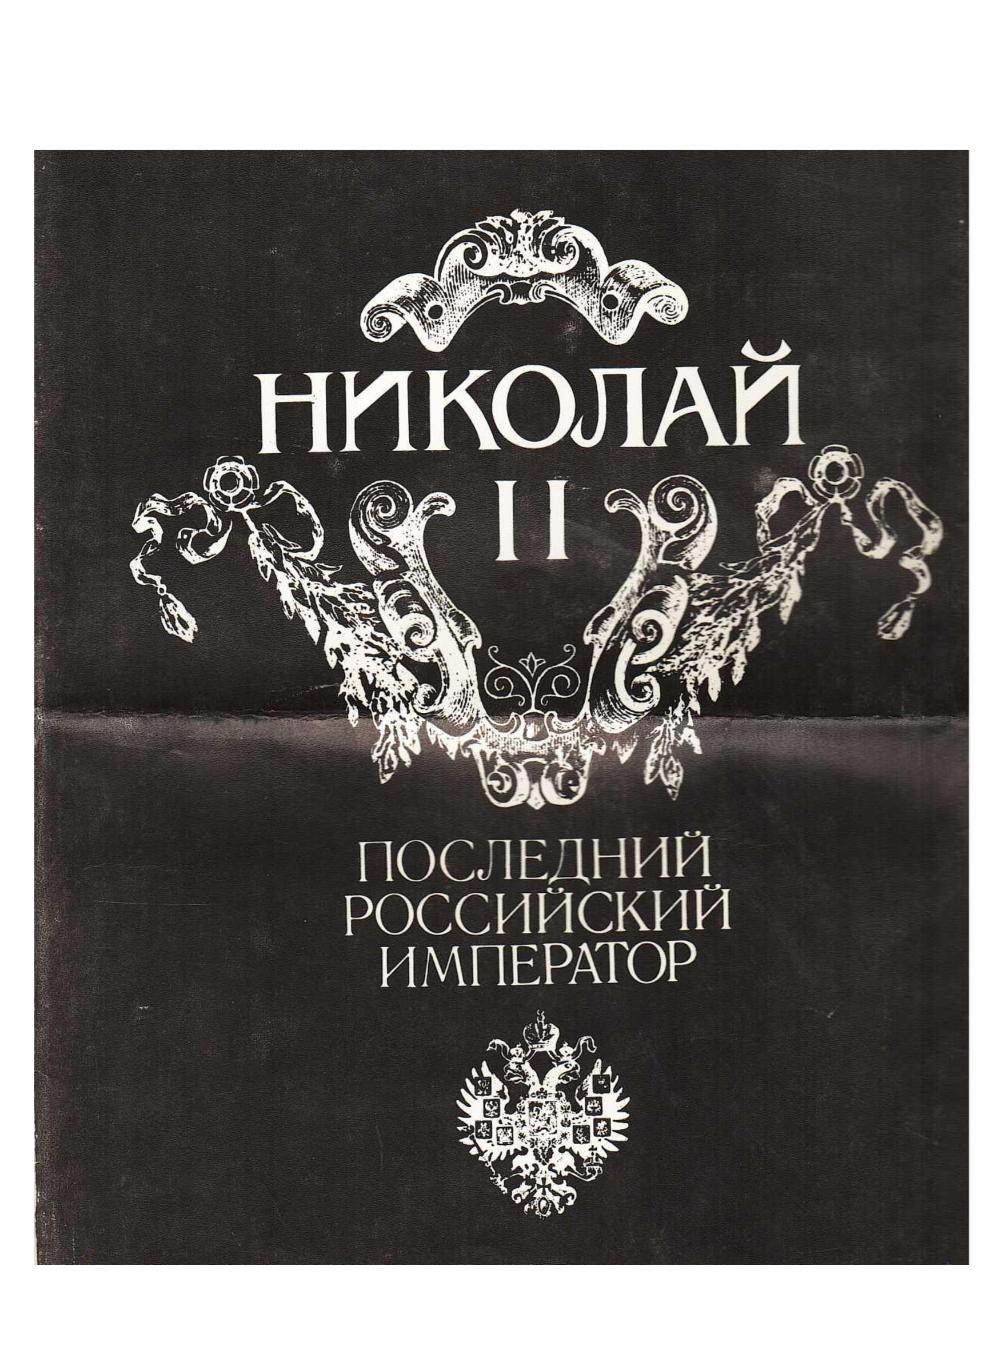 М. Ирошников, Л. Процай, Ю. Шелаев. Николай II – последний русский император